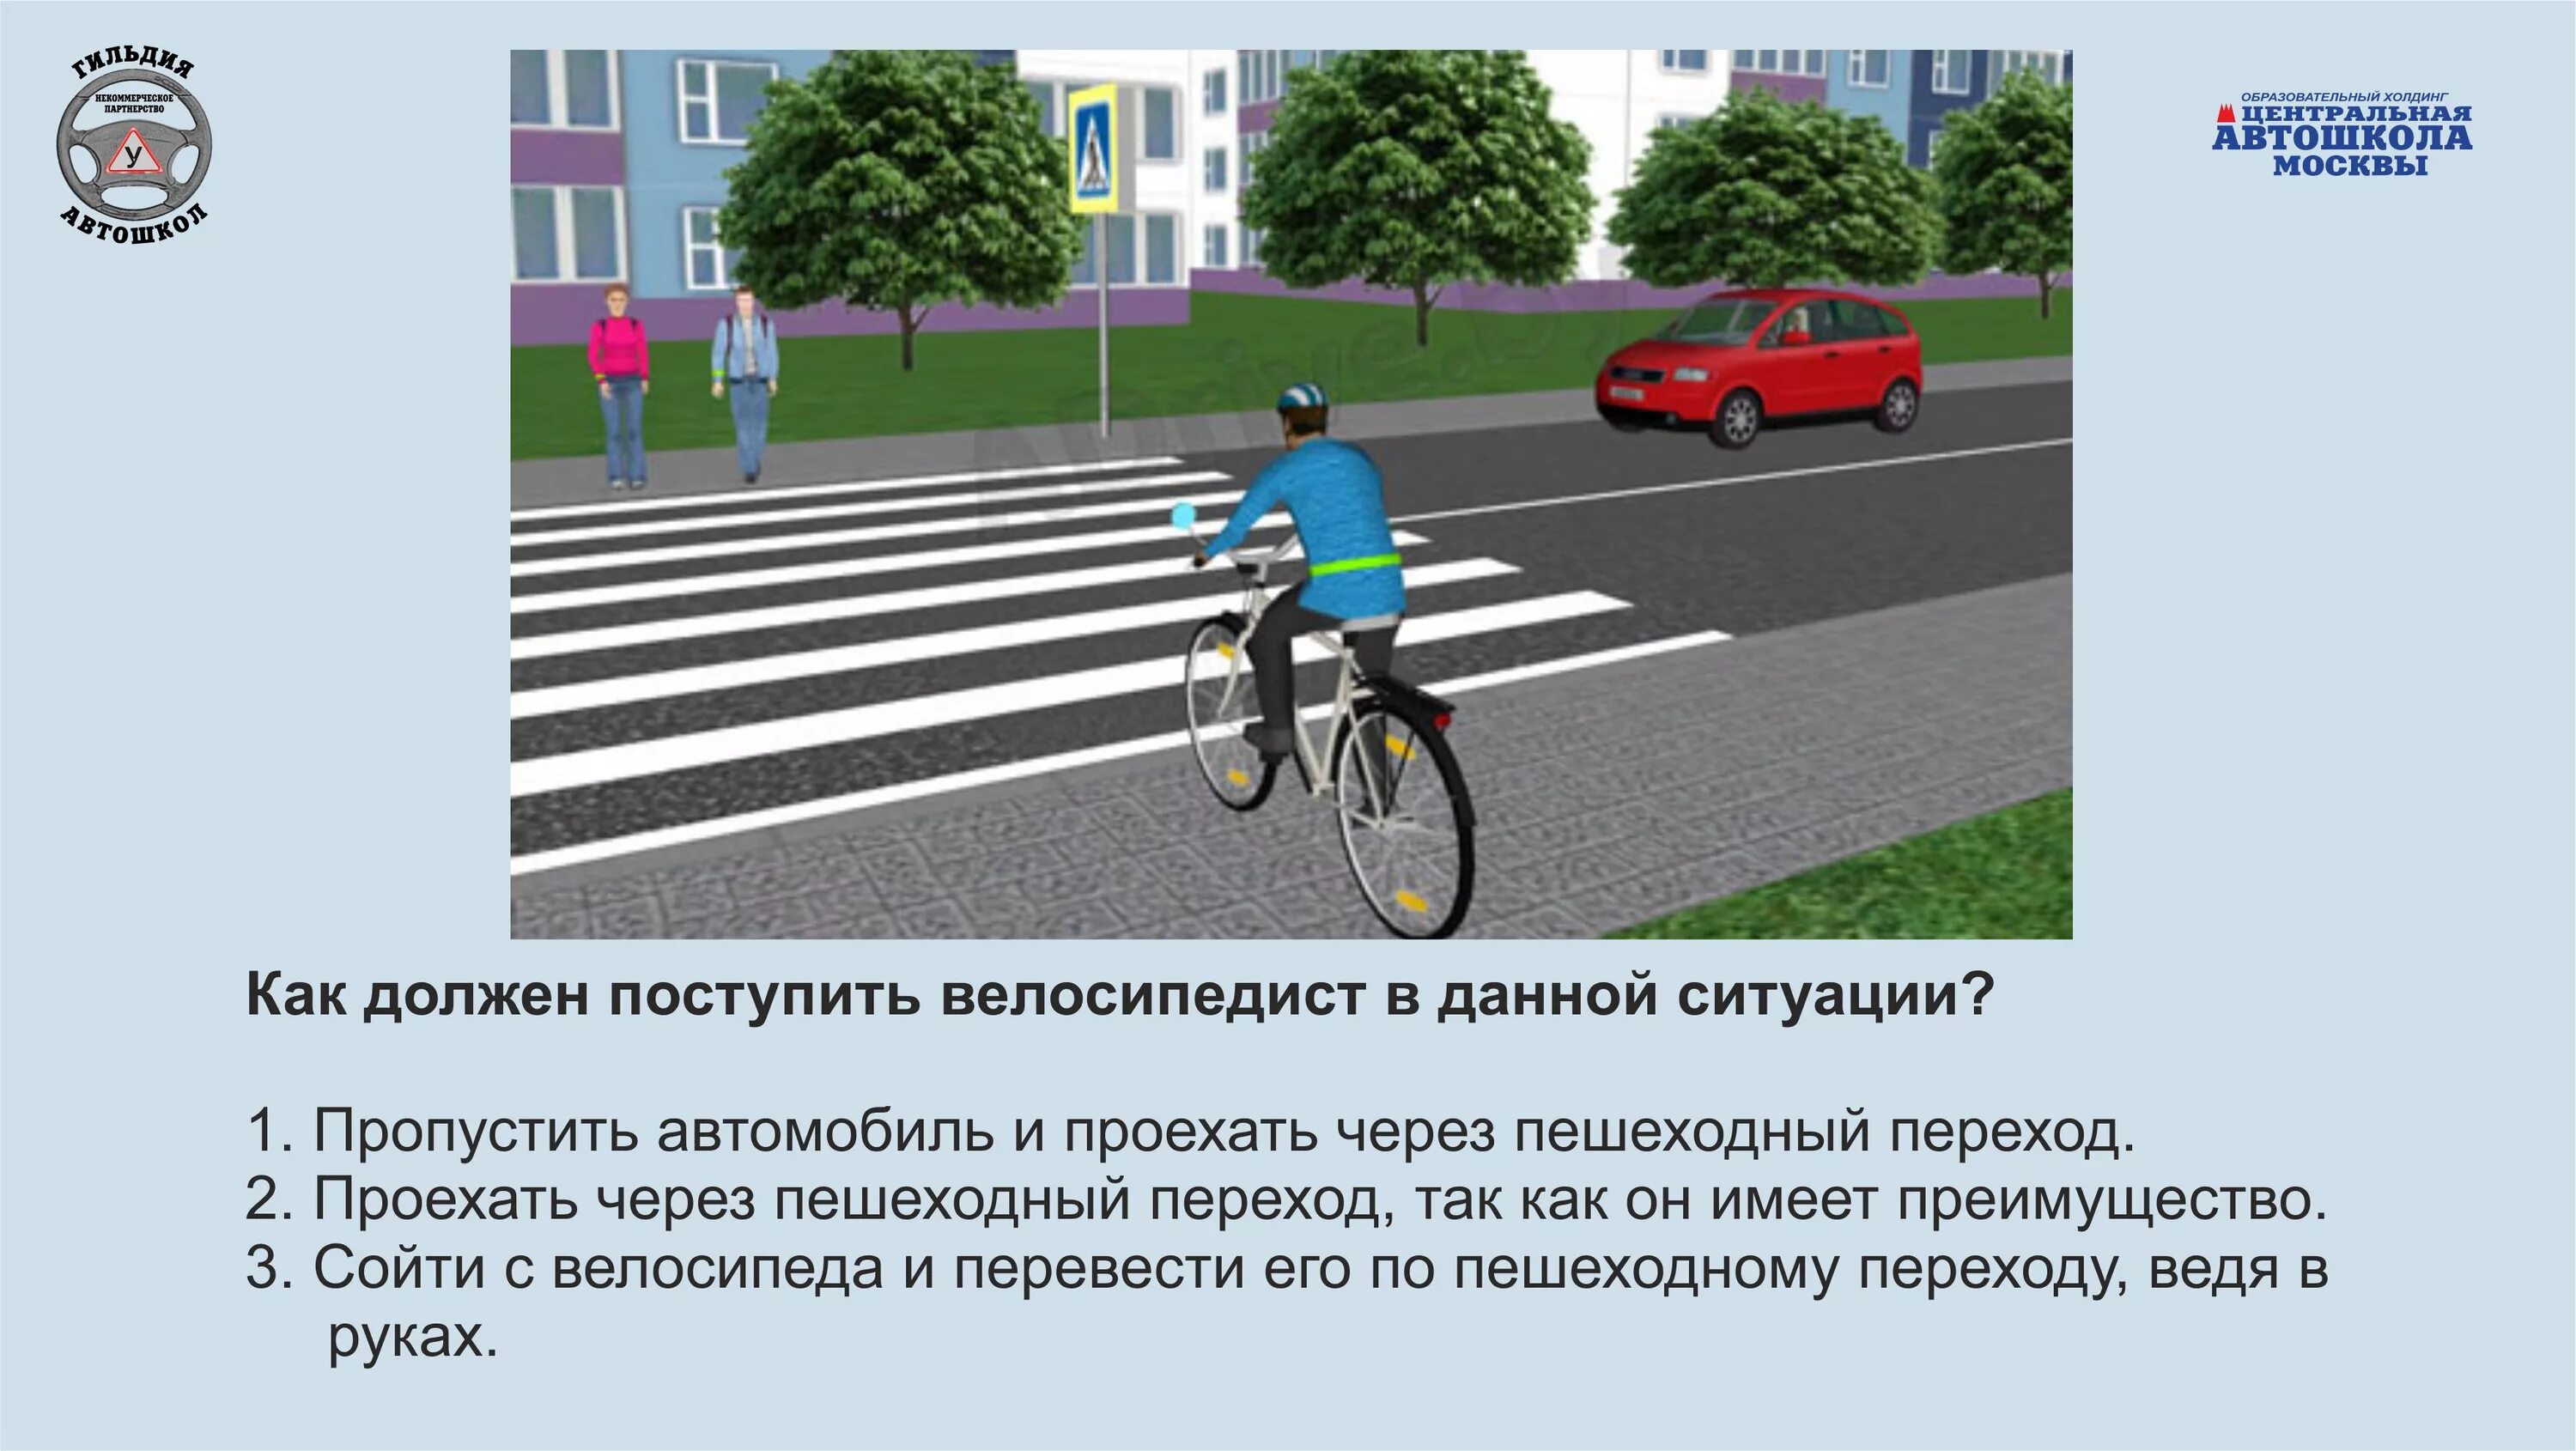 ПДД для пешеходов и велосипедистов. Дорожные ситуации для велосипедистов. ПДД для велосипедистов. Правило дорожного движения для велосипедистов.